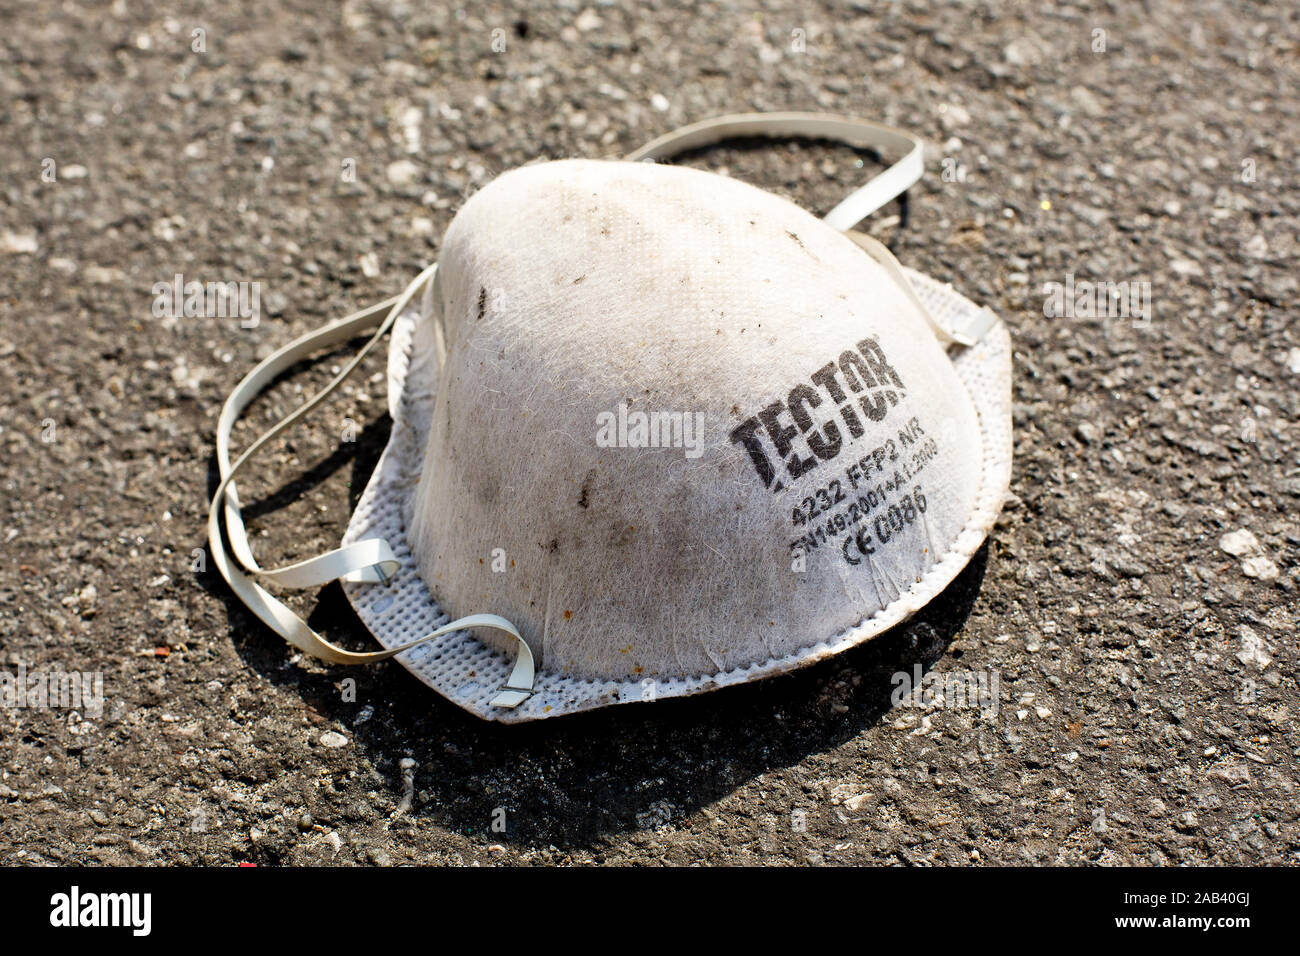 Eine gebrauchte Schutzmaske liegt auf dem Asphalt |A used protective mask lies on the asphalt| Stock Photo